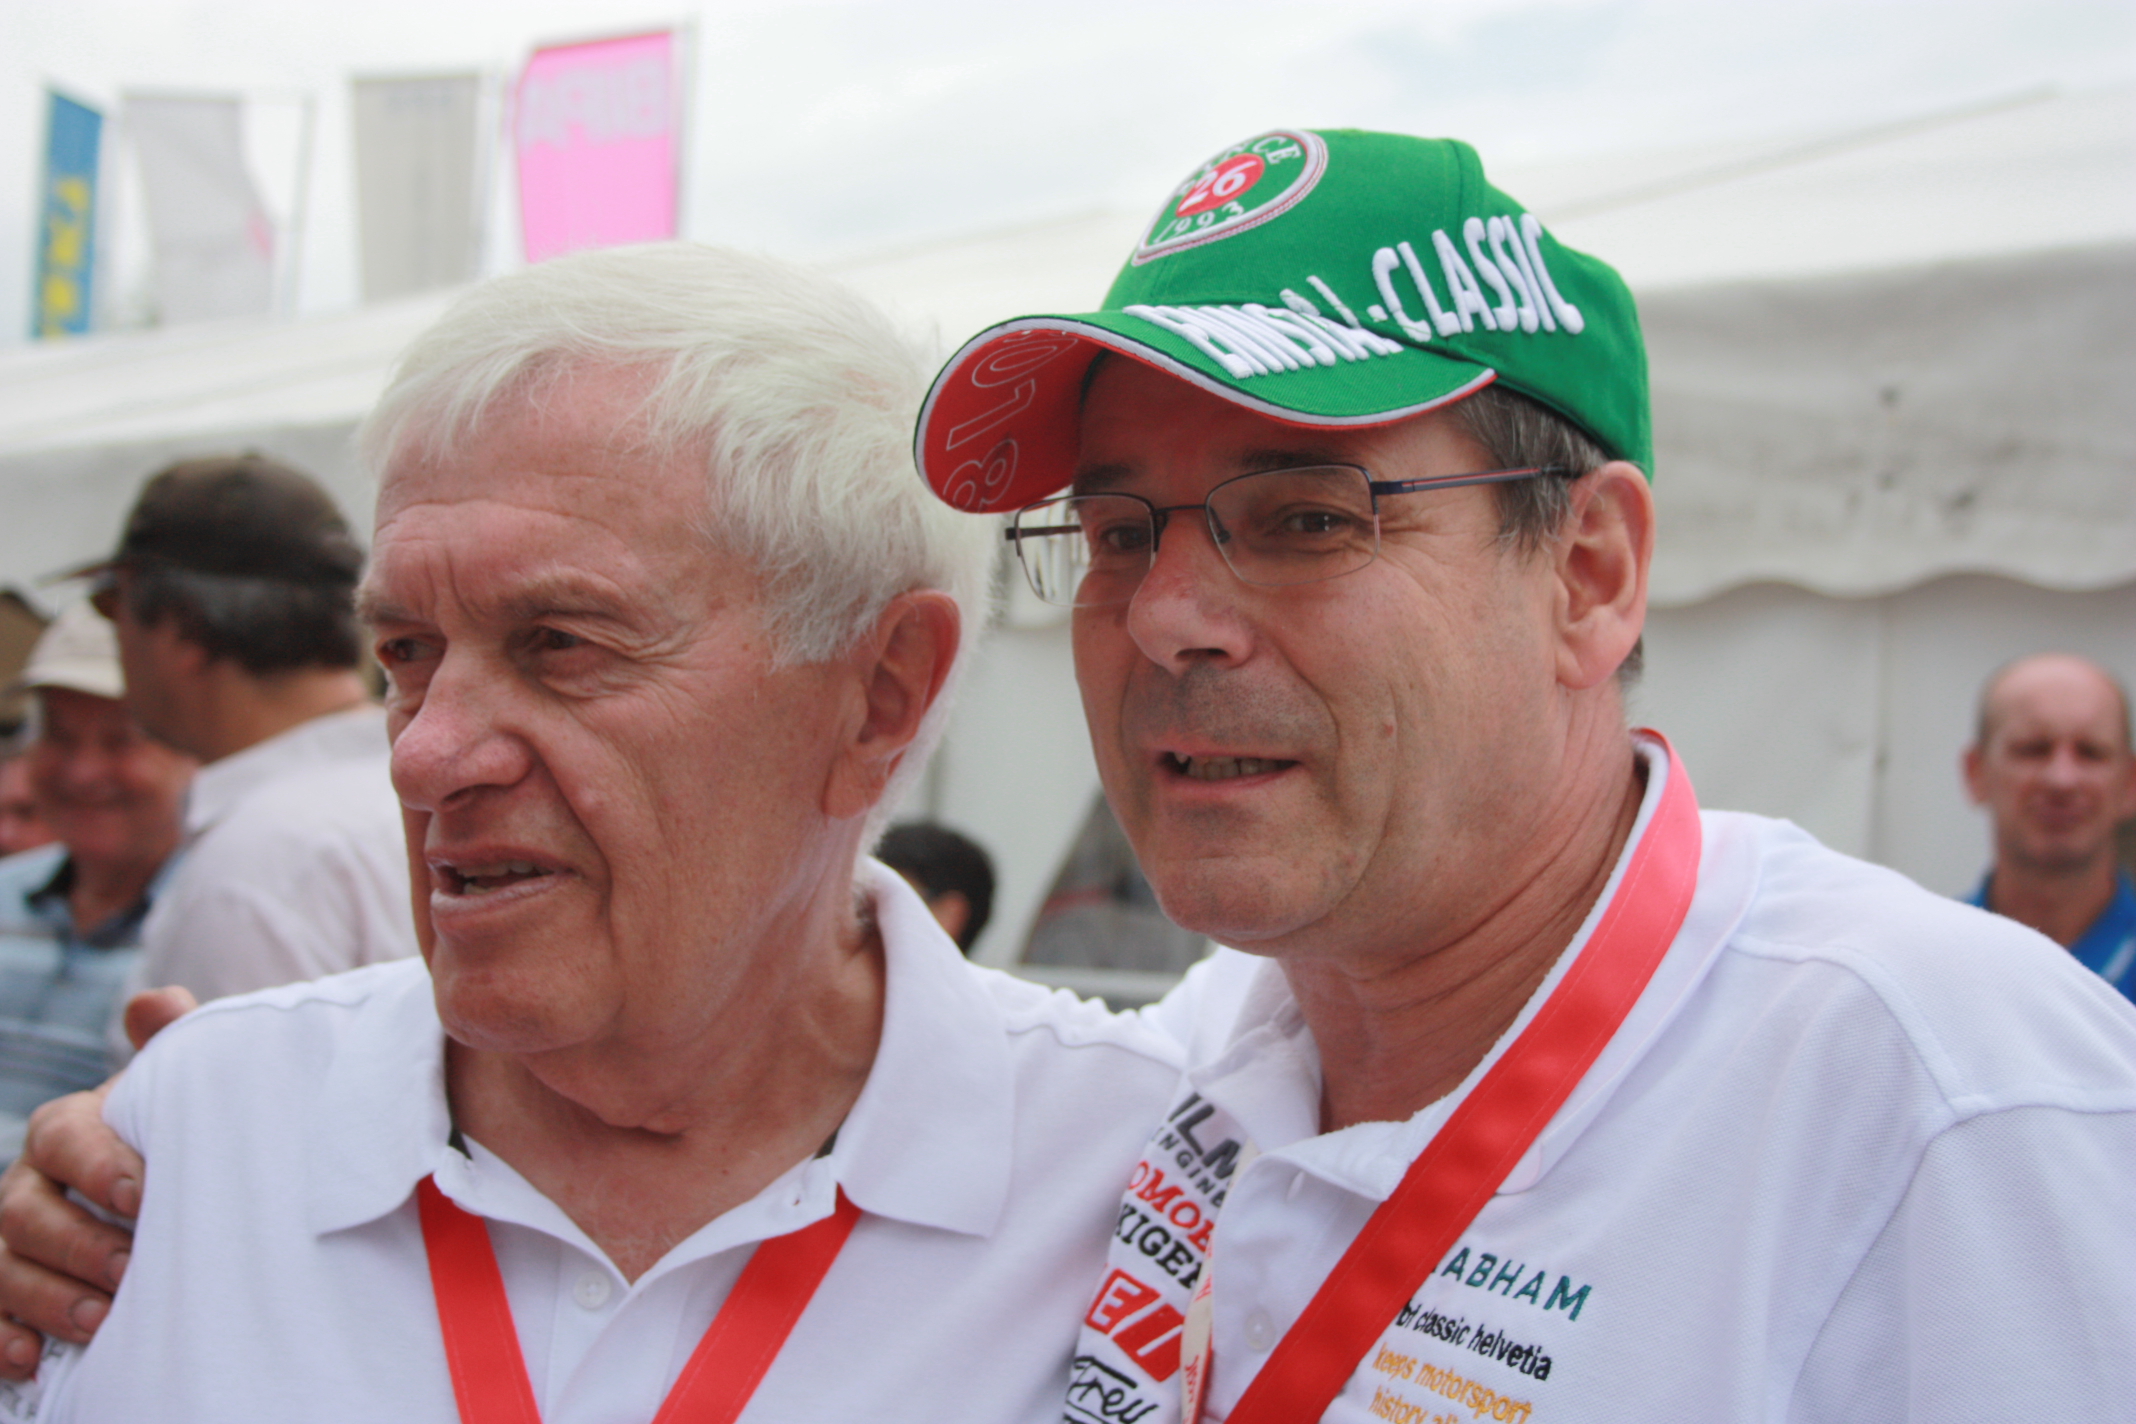 Organizátor podiku Helmut Zwickl s legendárním mechanikem F1 Brunem Flueckigerem. Zwickl byl důvěrným přítelem Jochana Rinta a Nikiho Laudy.